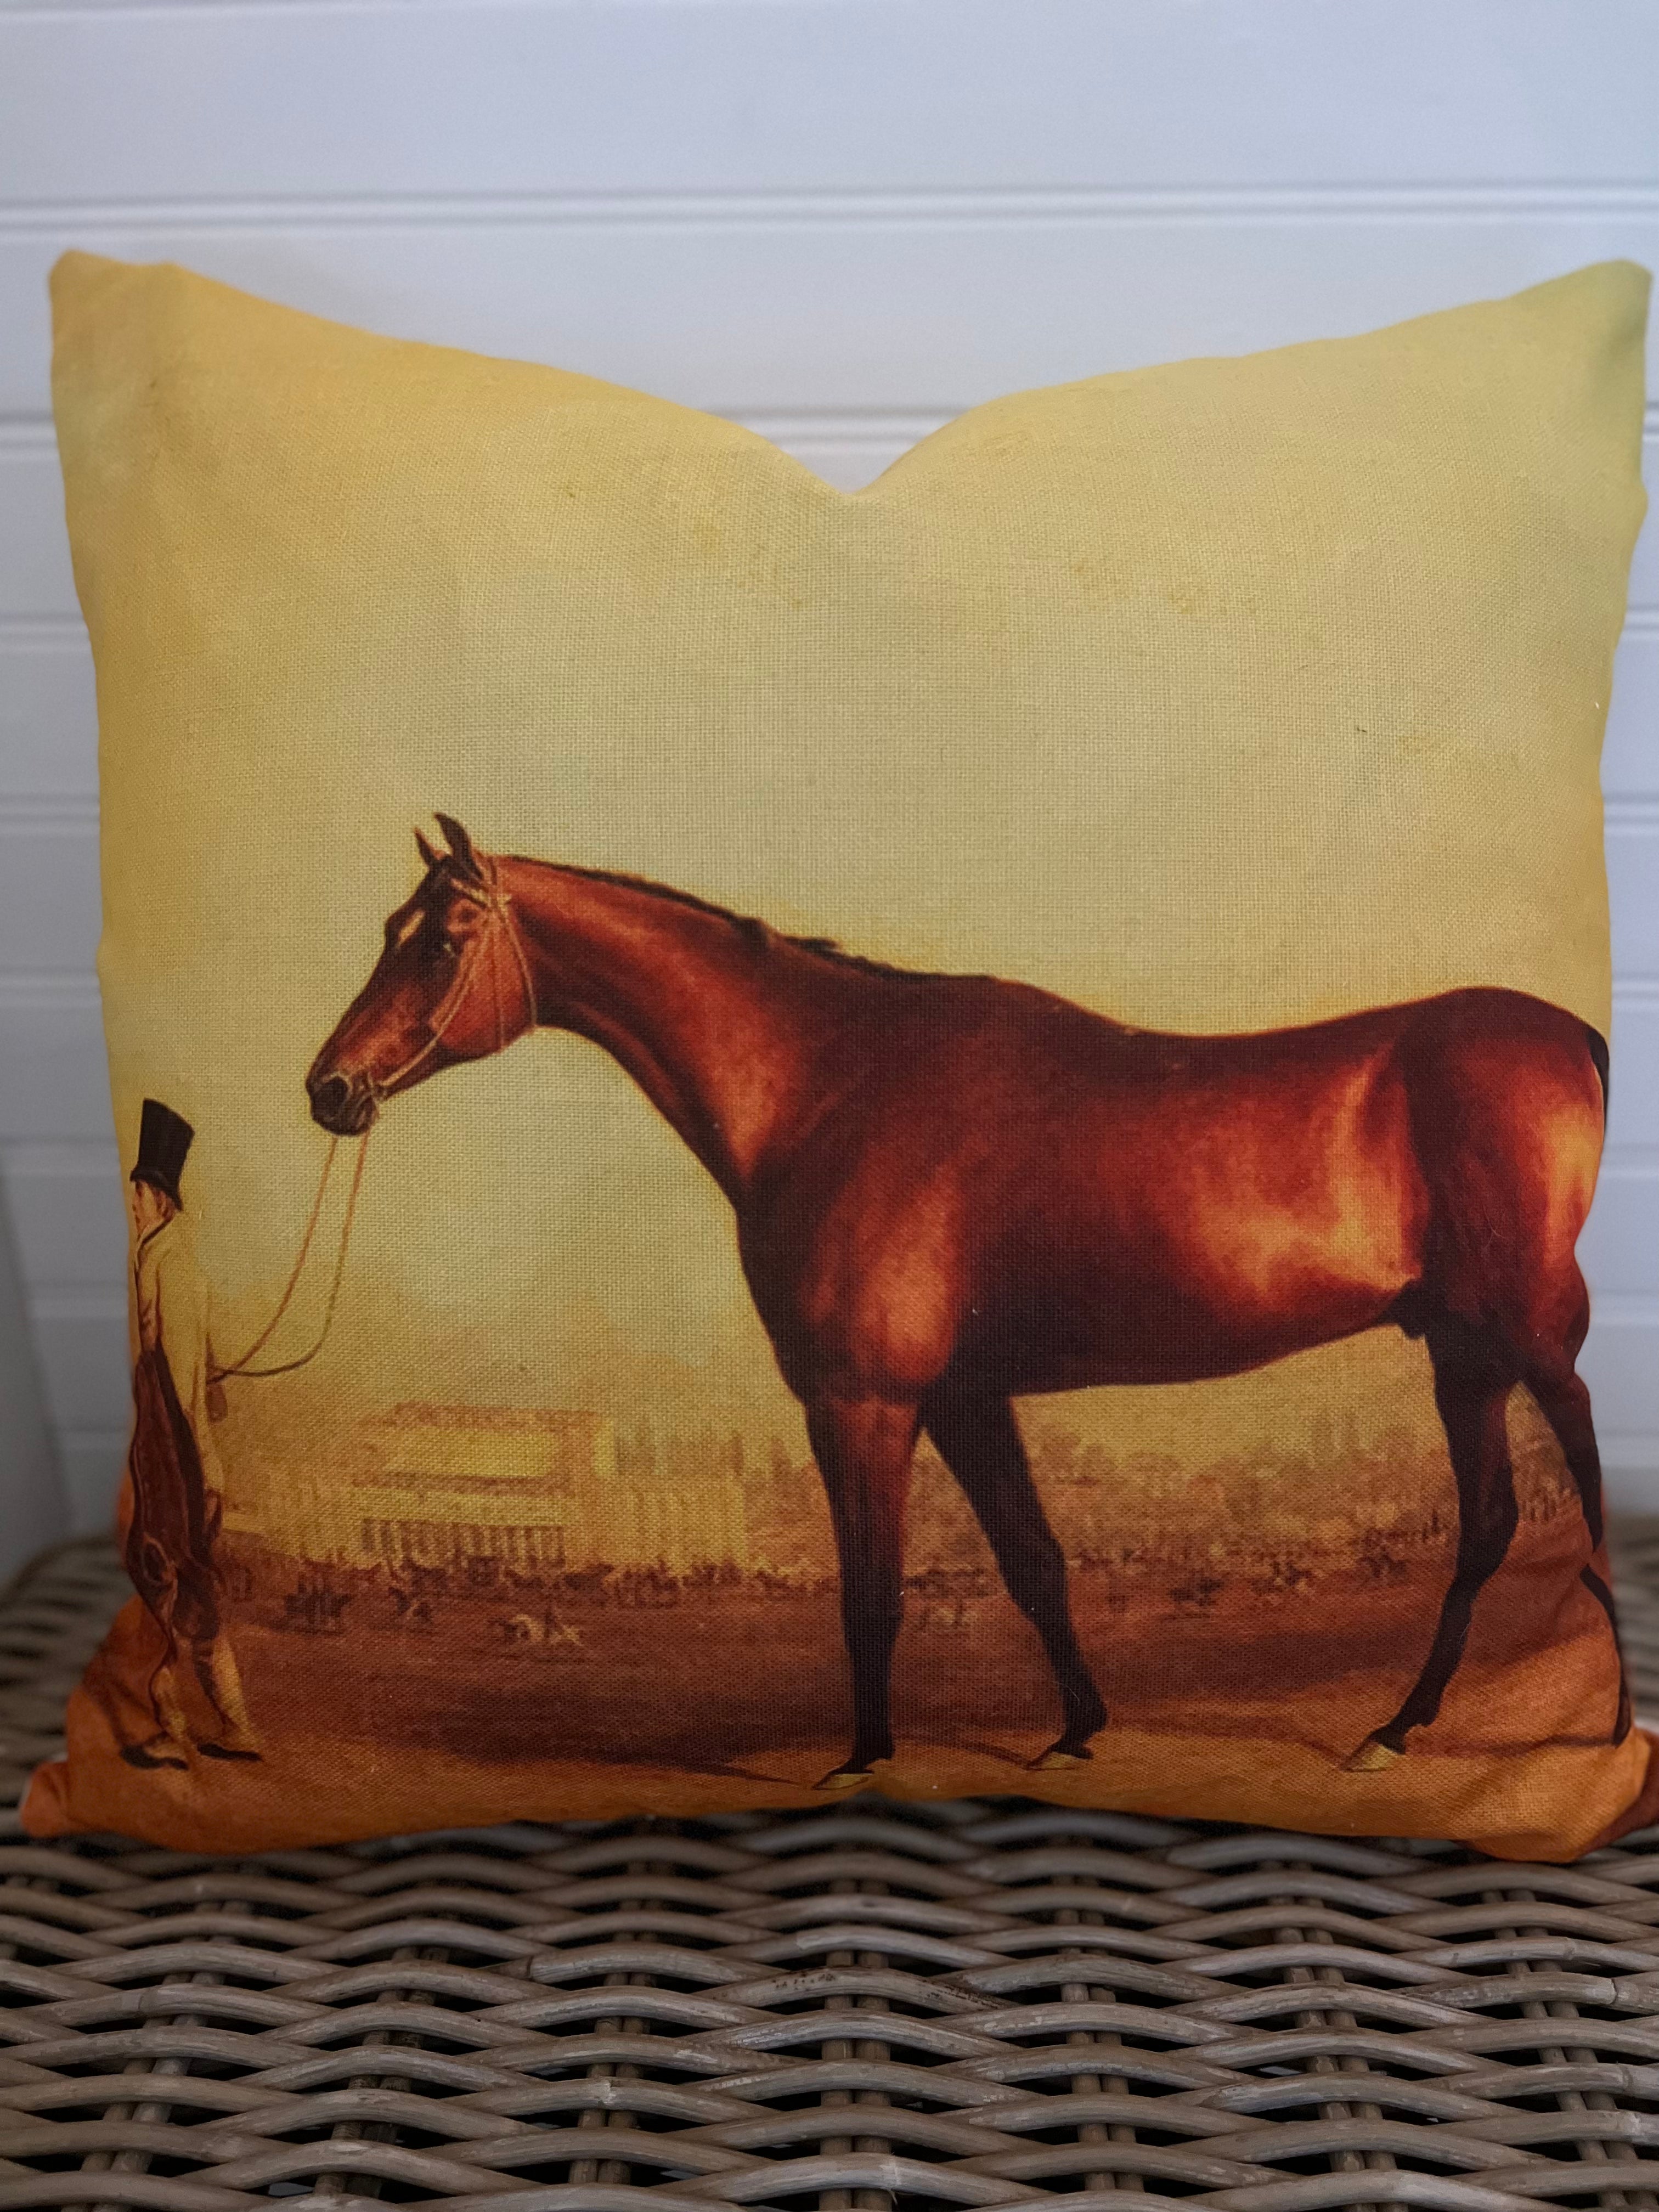 Equestrian Cushion Cover